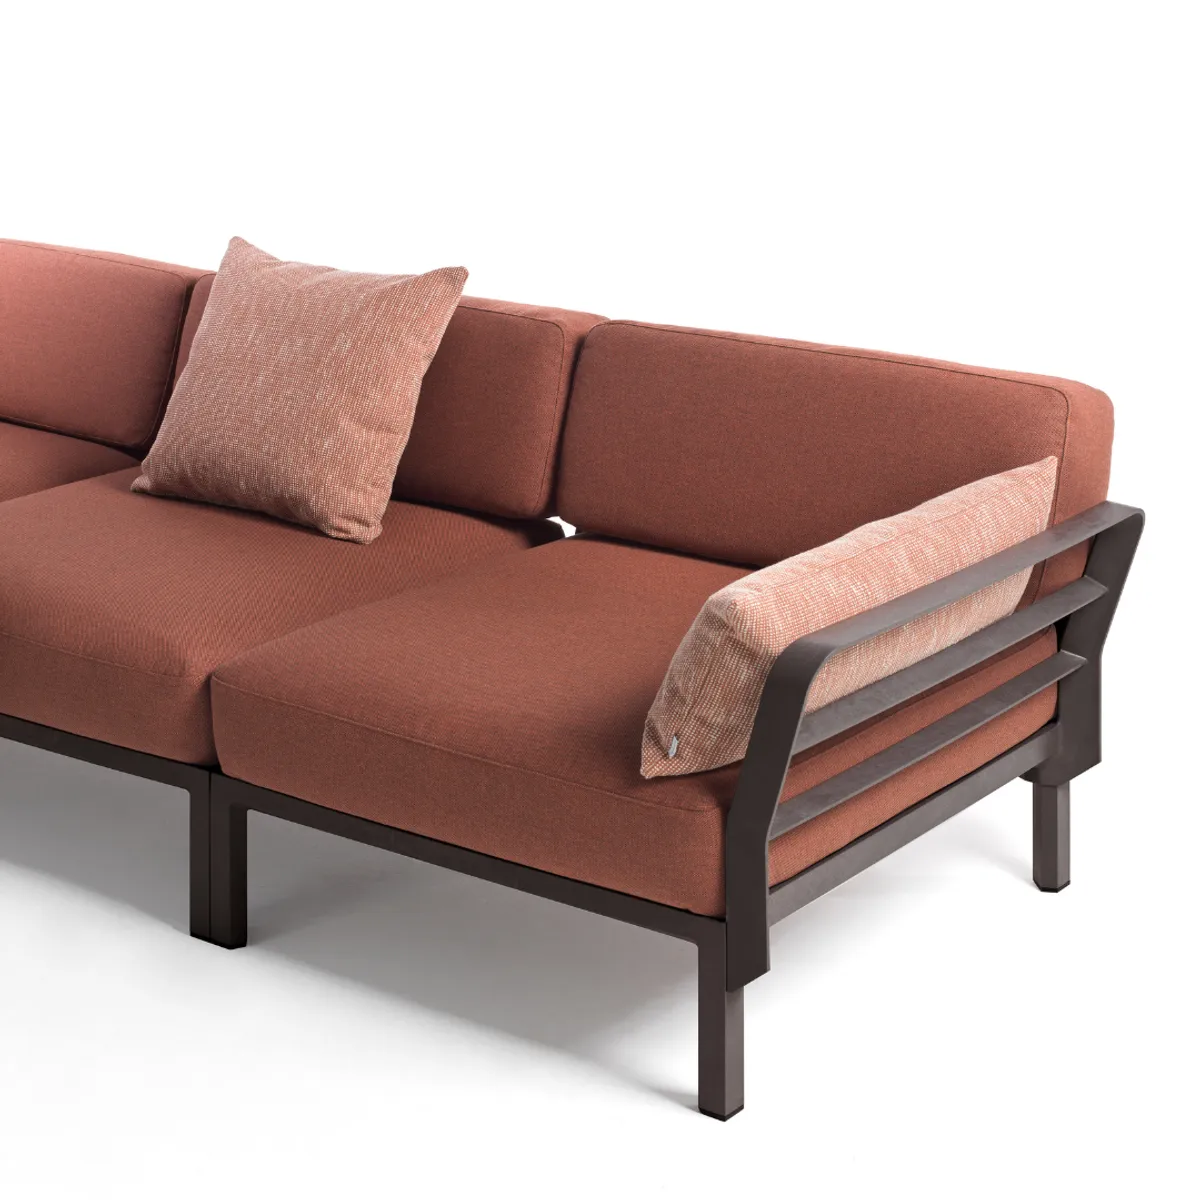 Maximo modular sofa 4